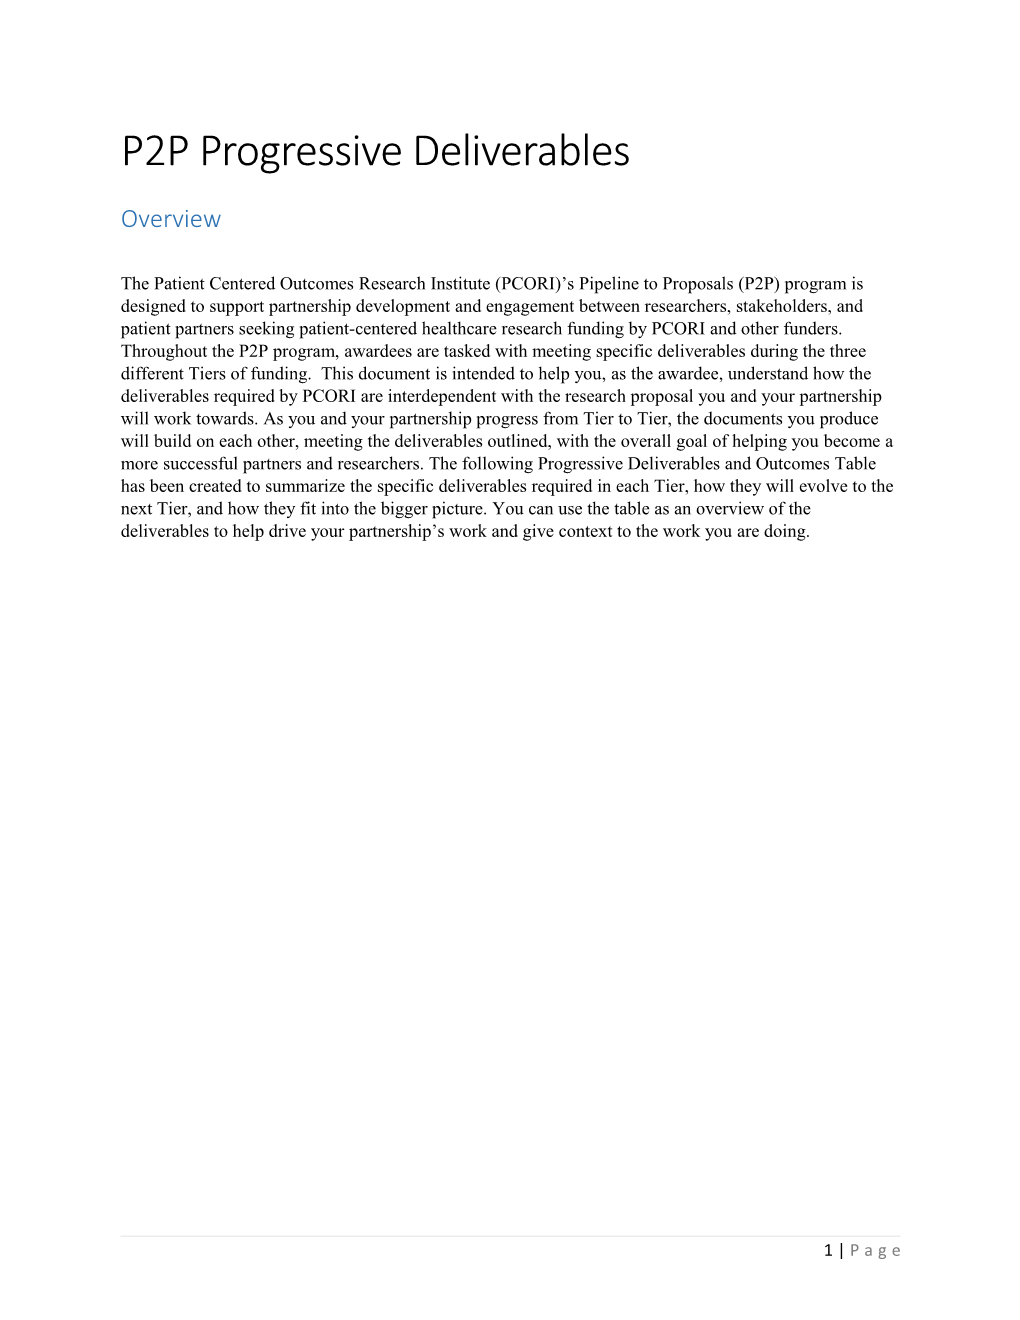 Progressive Deliverables and Outcomes Table